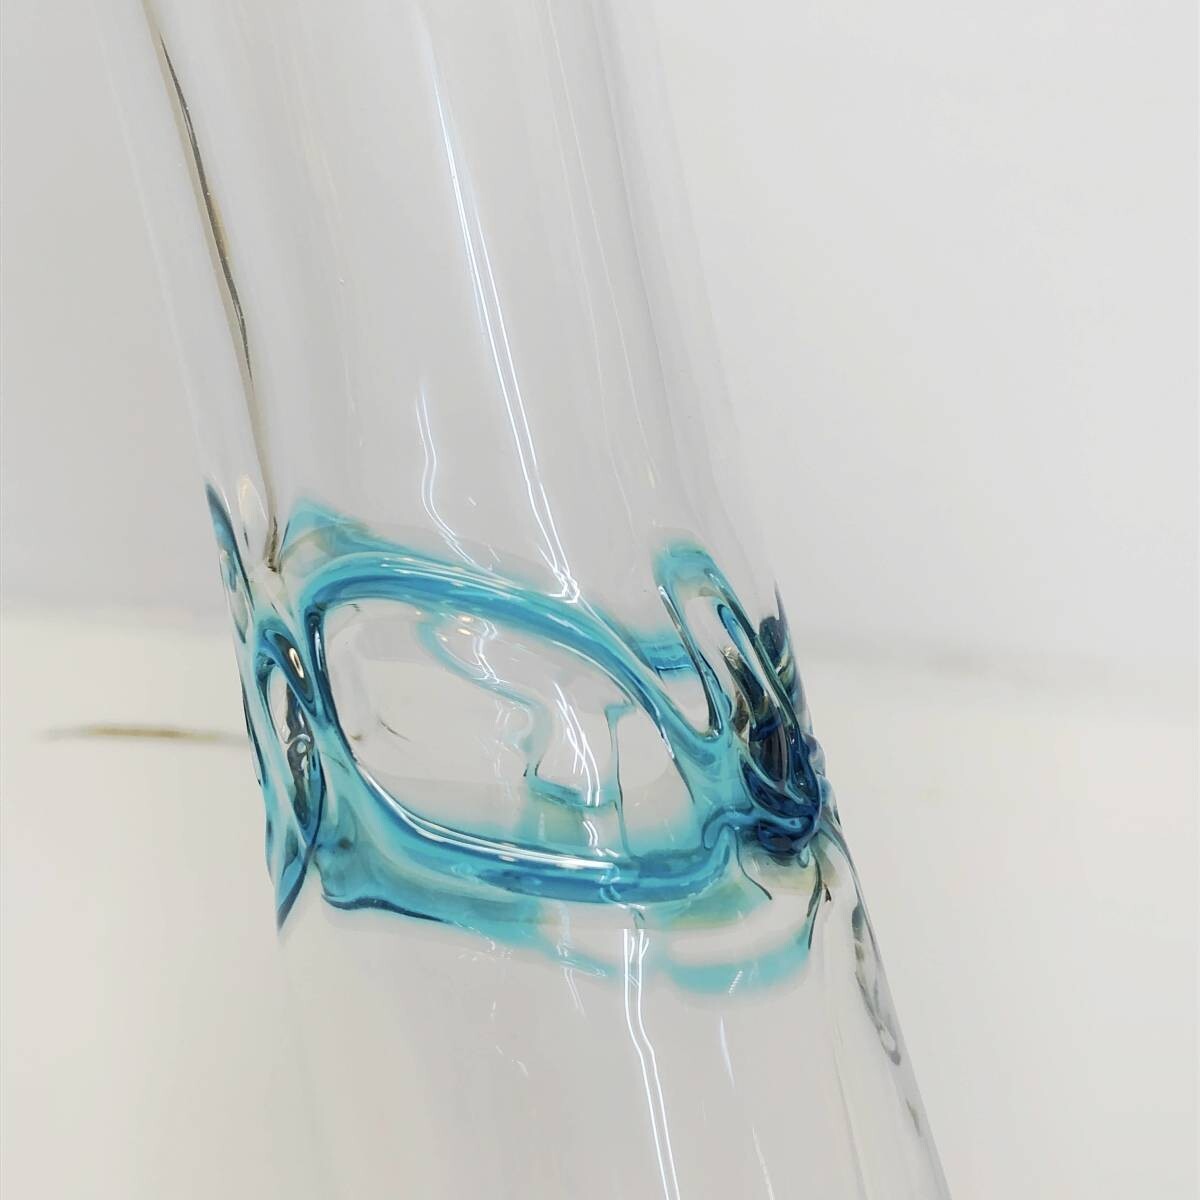  new goods 1. light blue LSA international flower base vase hand made glass turquoise Izzi Vase 27cm Poland made G901-27